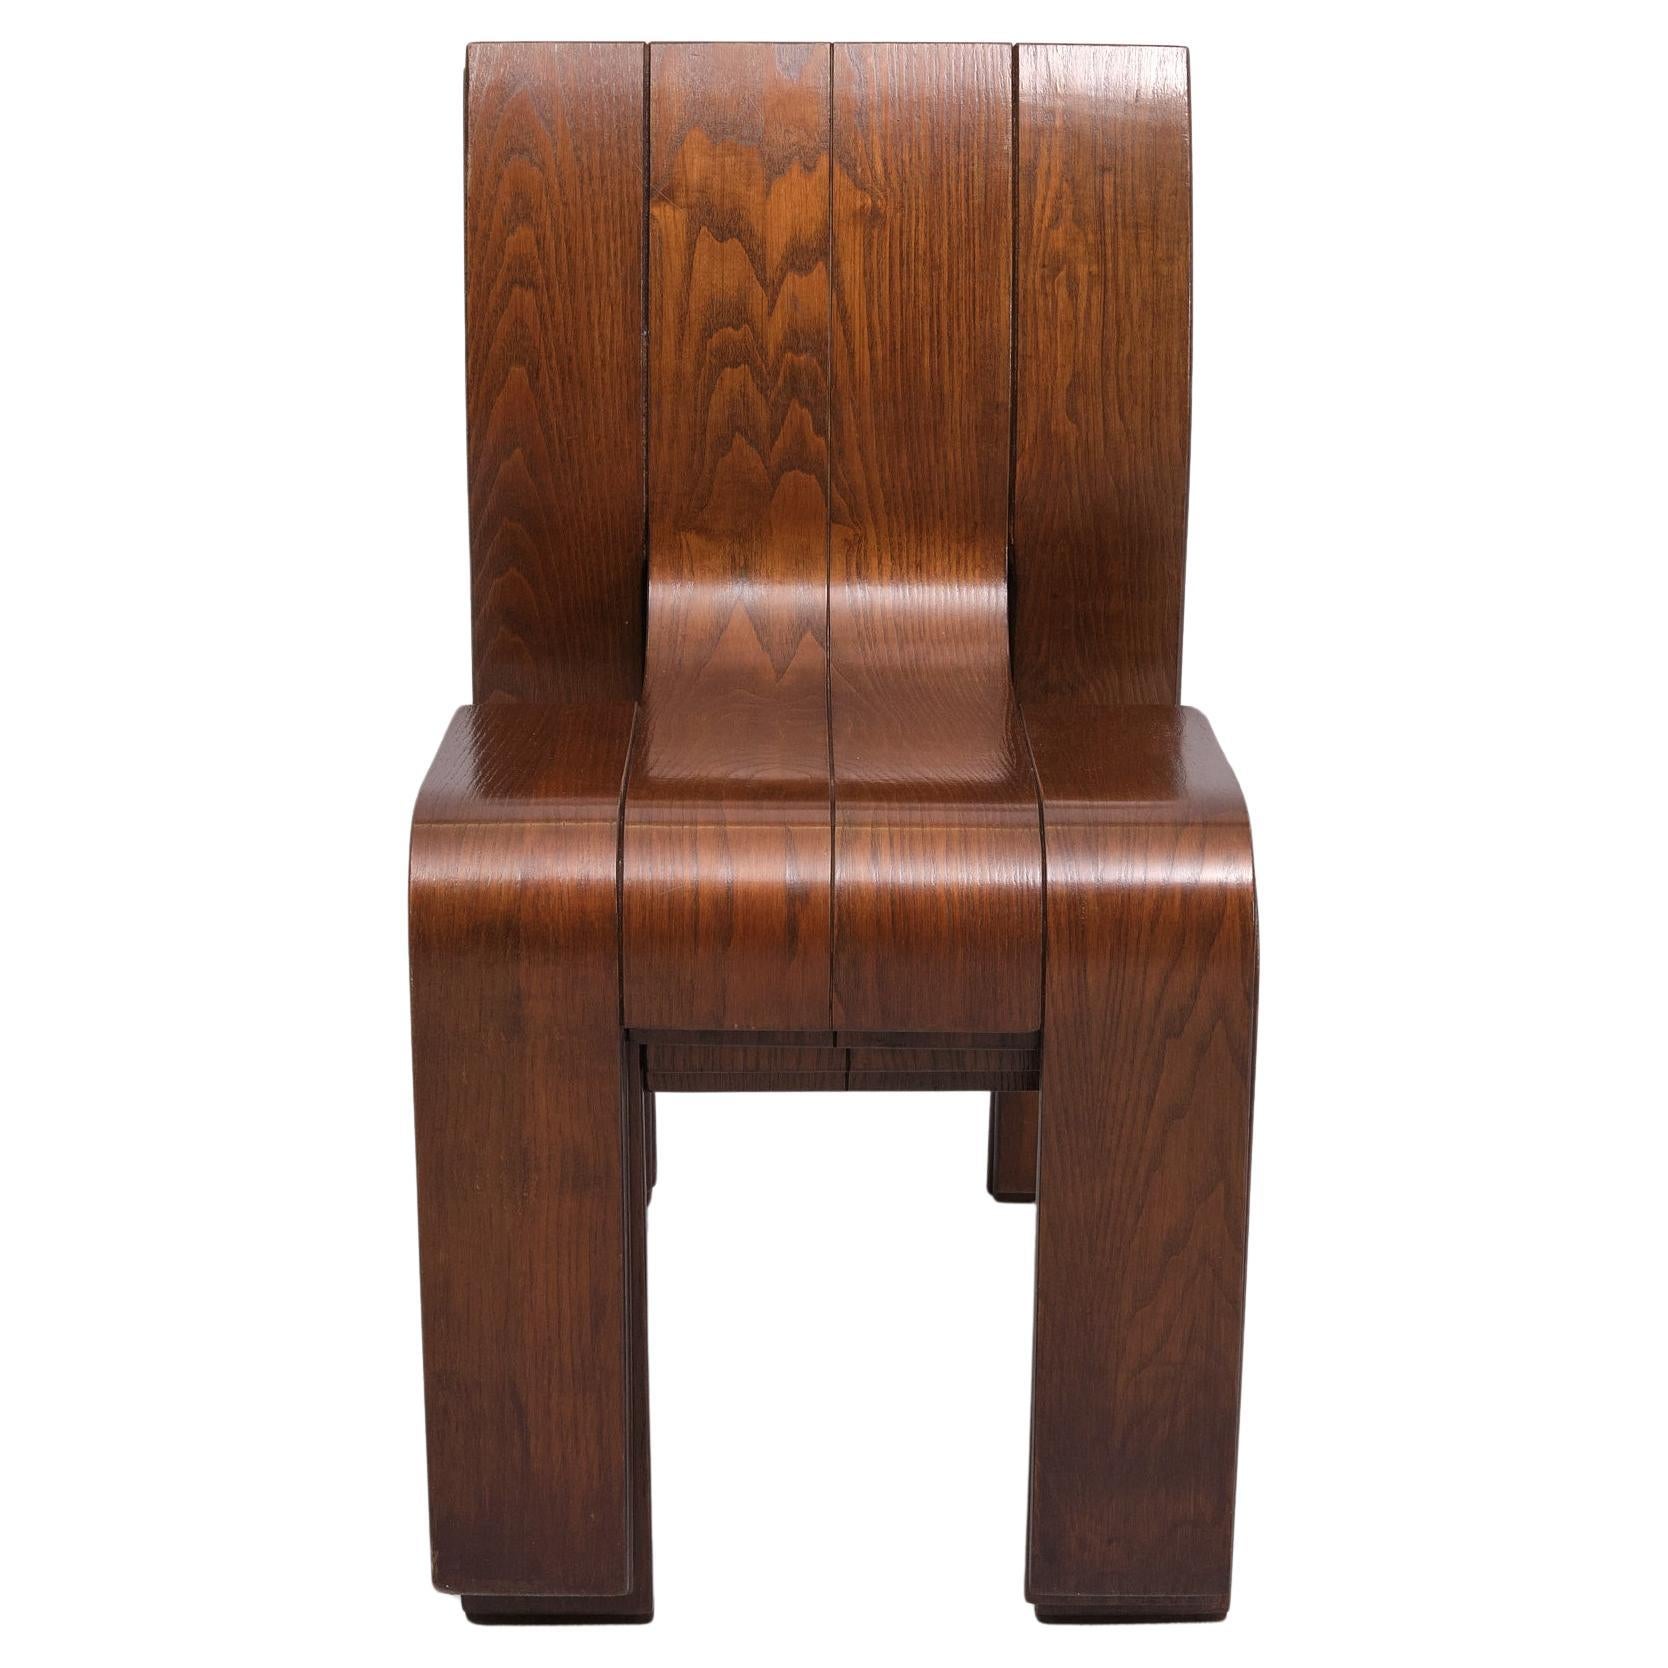 Set aus vier Strip-Stühlen, entworfen von Gijs Bakker für Castelijn. Dieses kultige niederländische Designstück ist einfach umwerfend. Entworfen von dem berühmten Designer Gijs Bakker und hergestellt von Castelijn in den 1970er Jahren. Diese Stühle